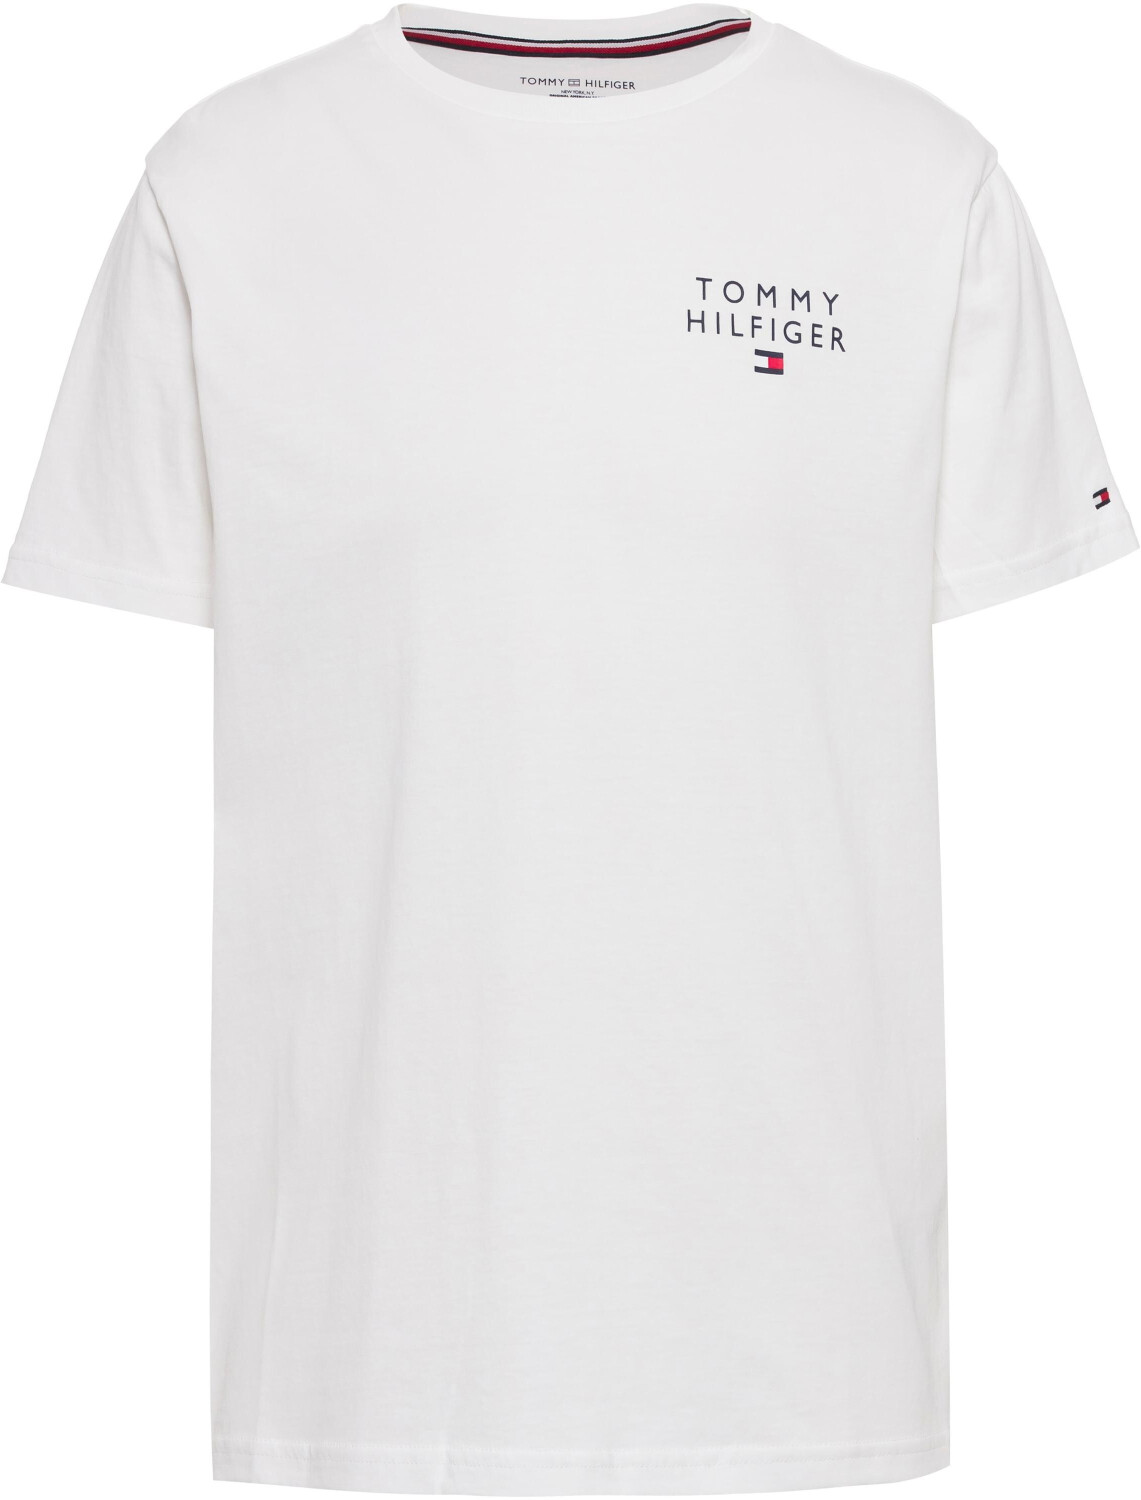 Tommy Hilfiger Logo Embroidery | 27,90 bei € ab (UM0UM02916) white Preisvergleich T-Shirt